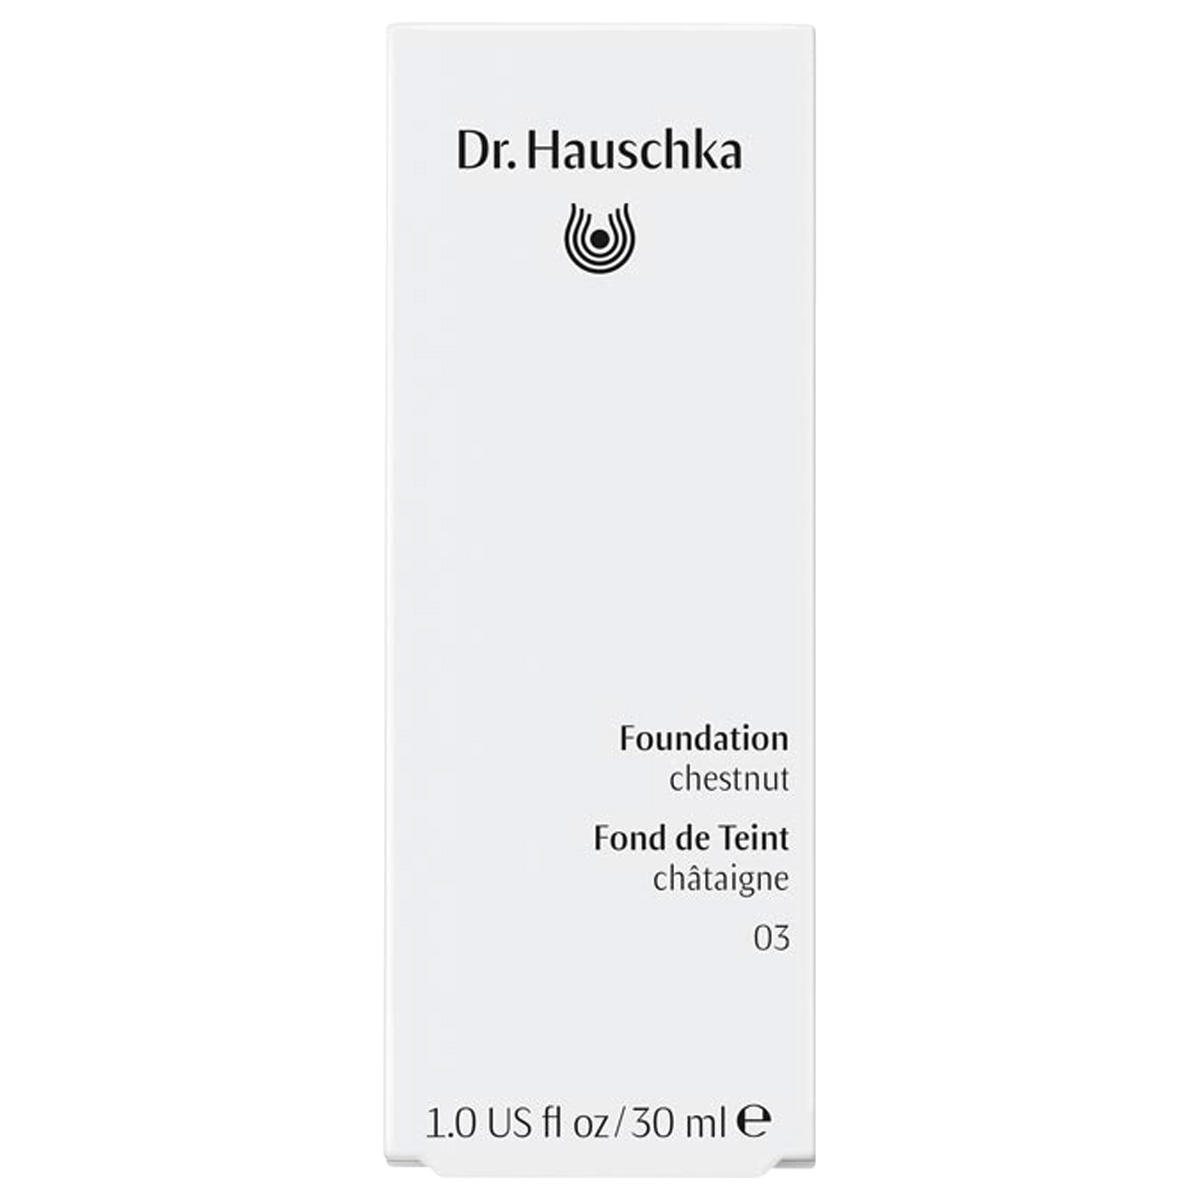 Dr. Hauschka Fondation 03 châtaigne, capacité 30 ml - 2